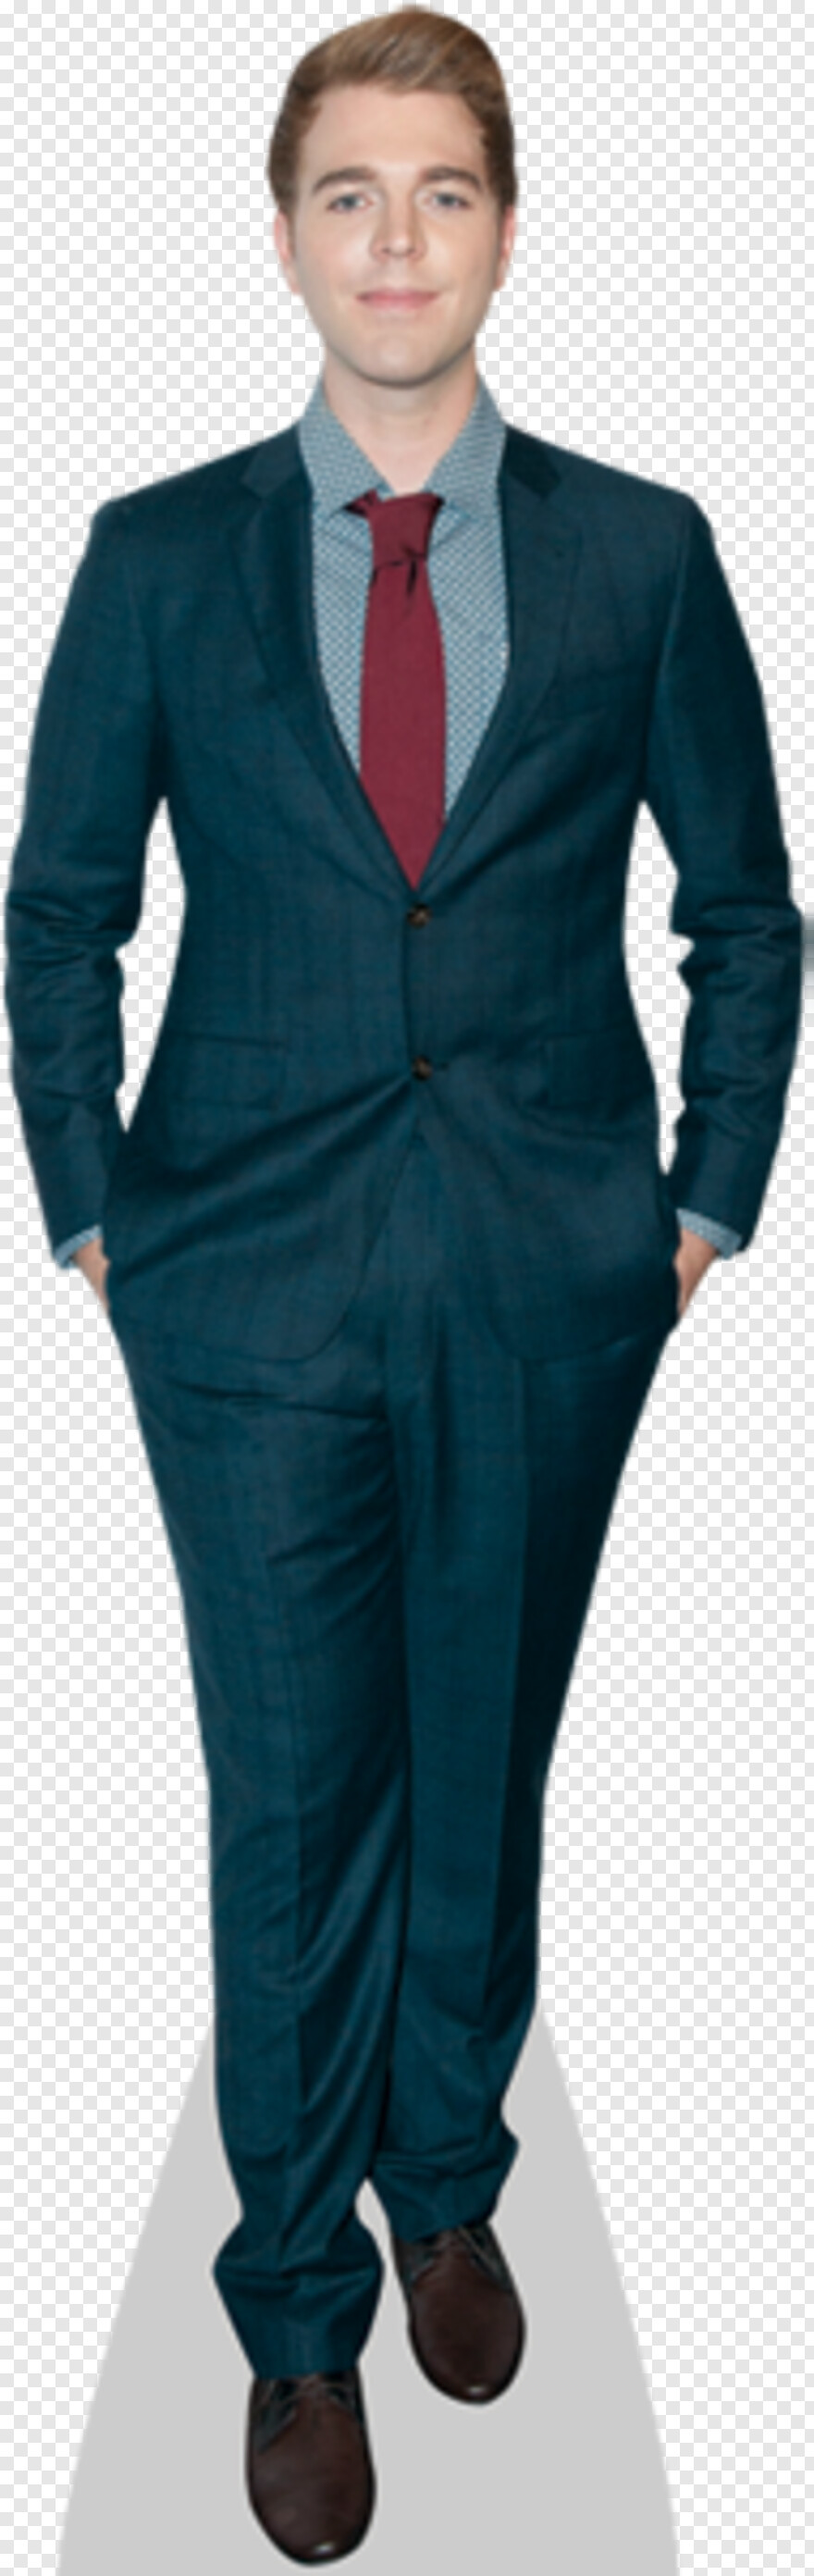 formal-suit # 1064778